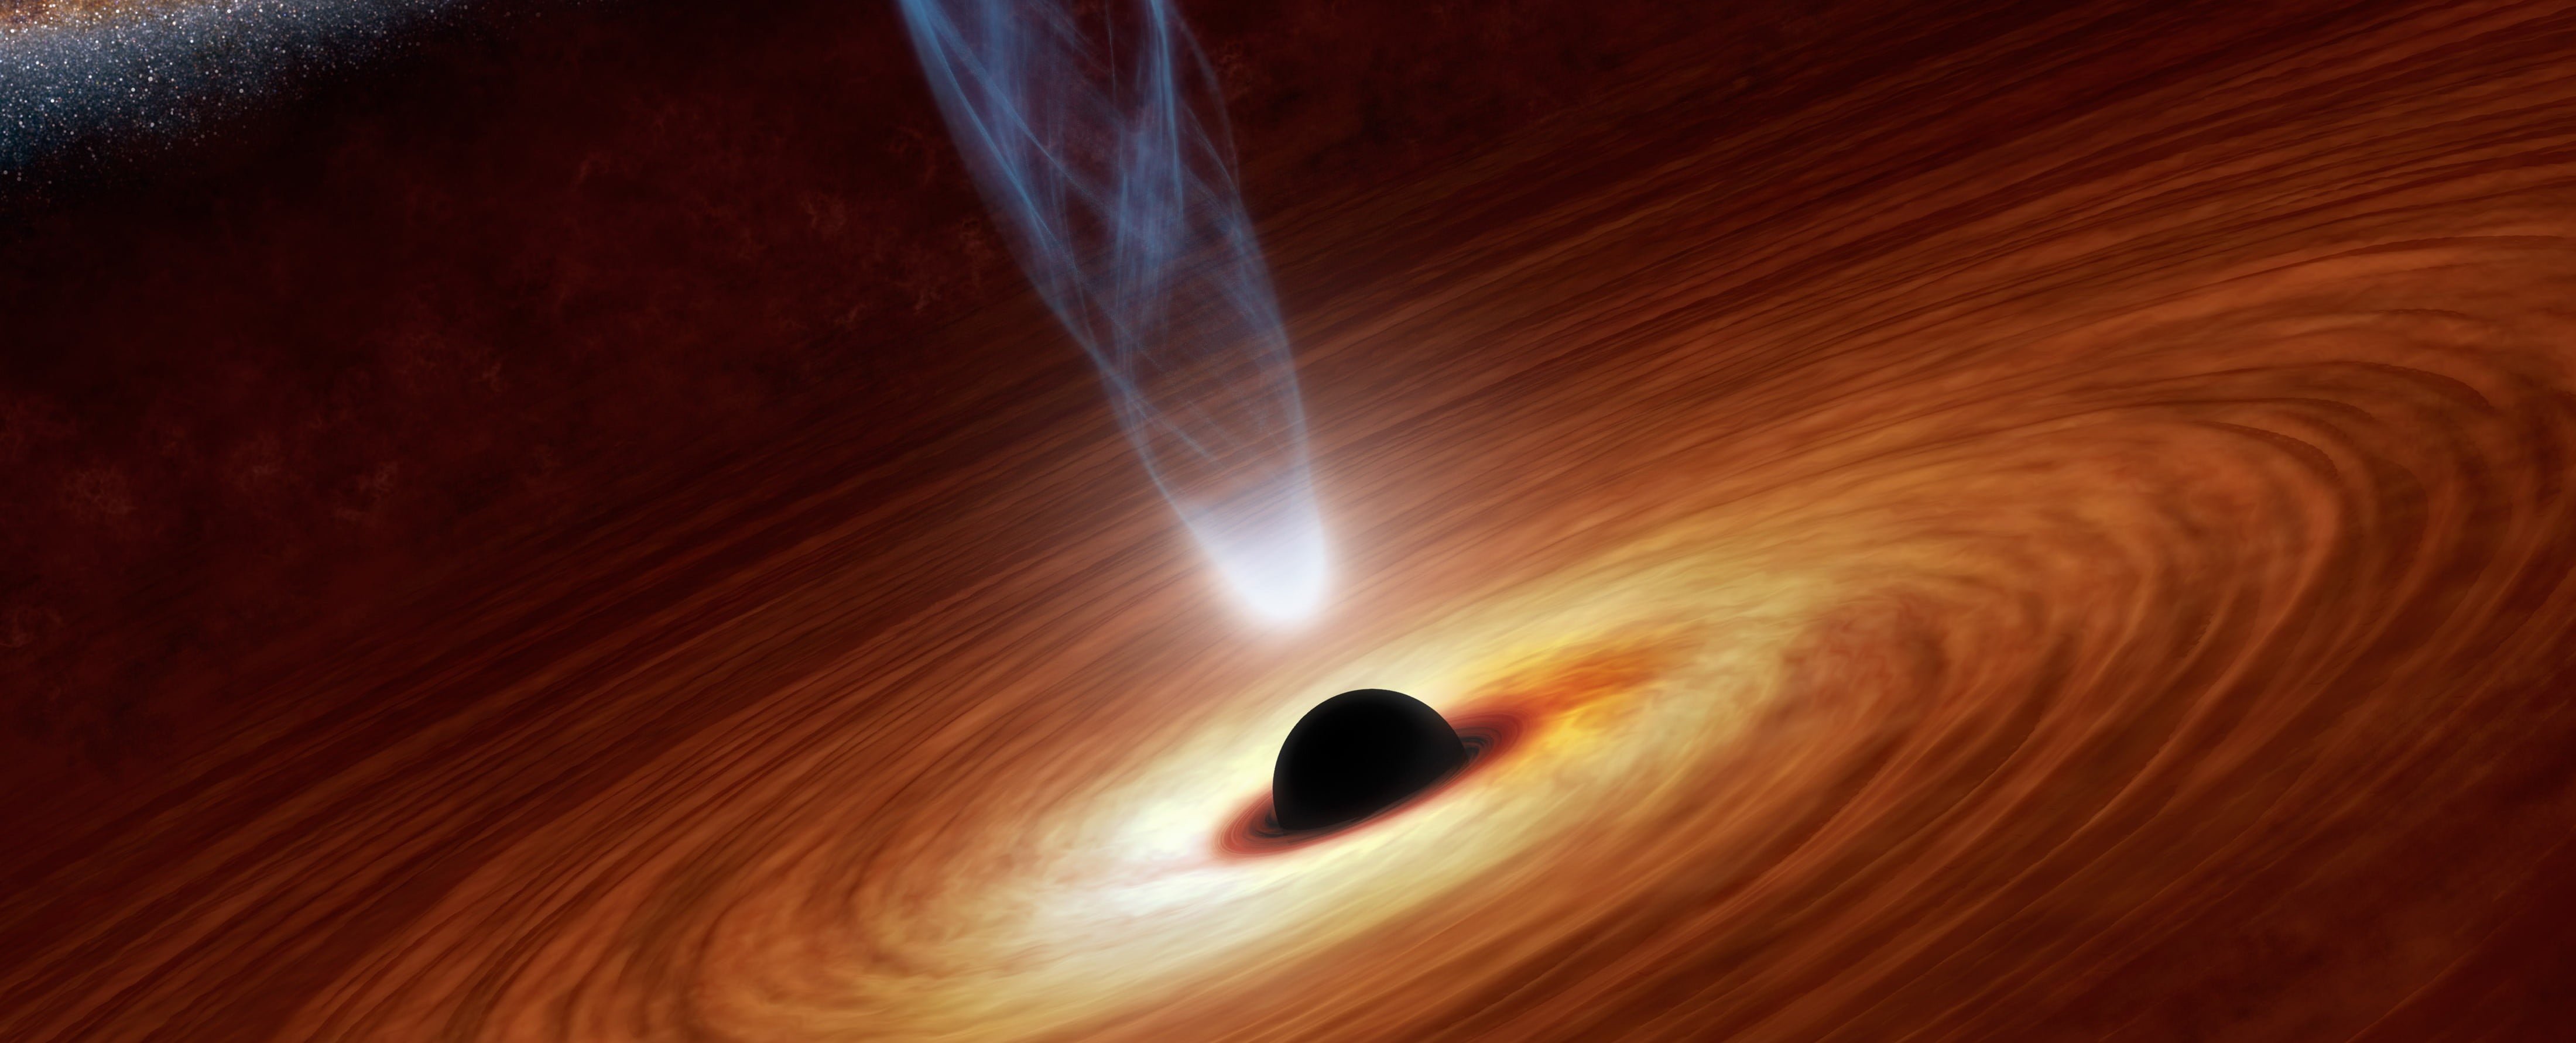 Black Holes Monsters In Space E1446641865197 مجلة نقطة العلمية